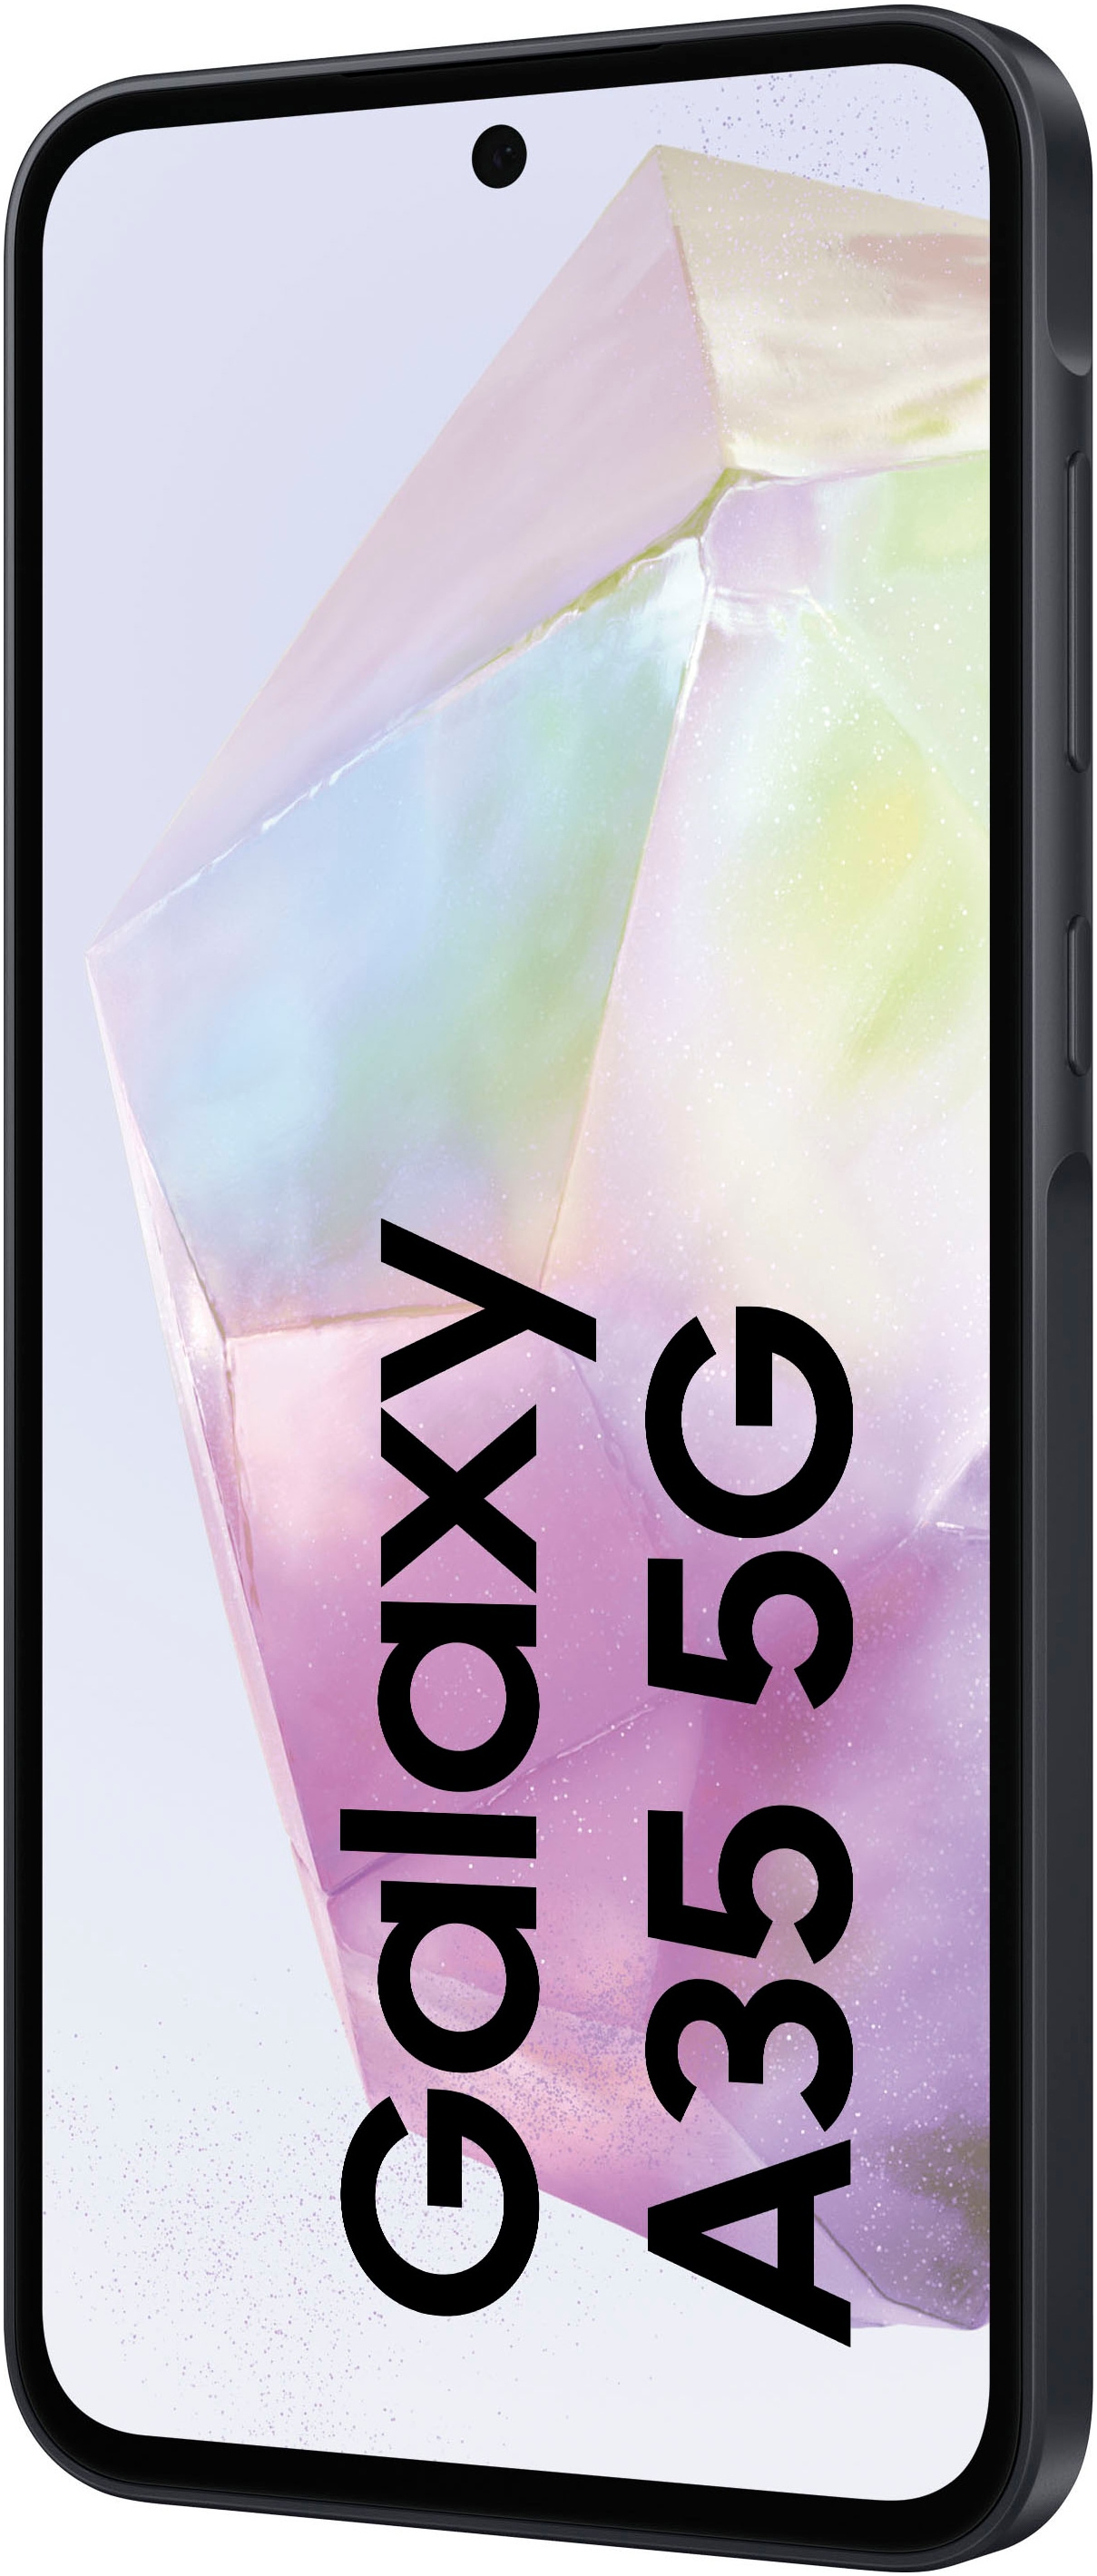 Samsung Smartphone »Galaxy A35 5G 128GB«, Marineblau, 16,83 cm/6,6 Zoll, 128 GB Speicherplatz, 50 MP Kamera